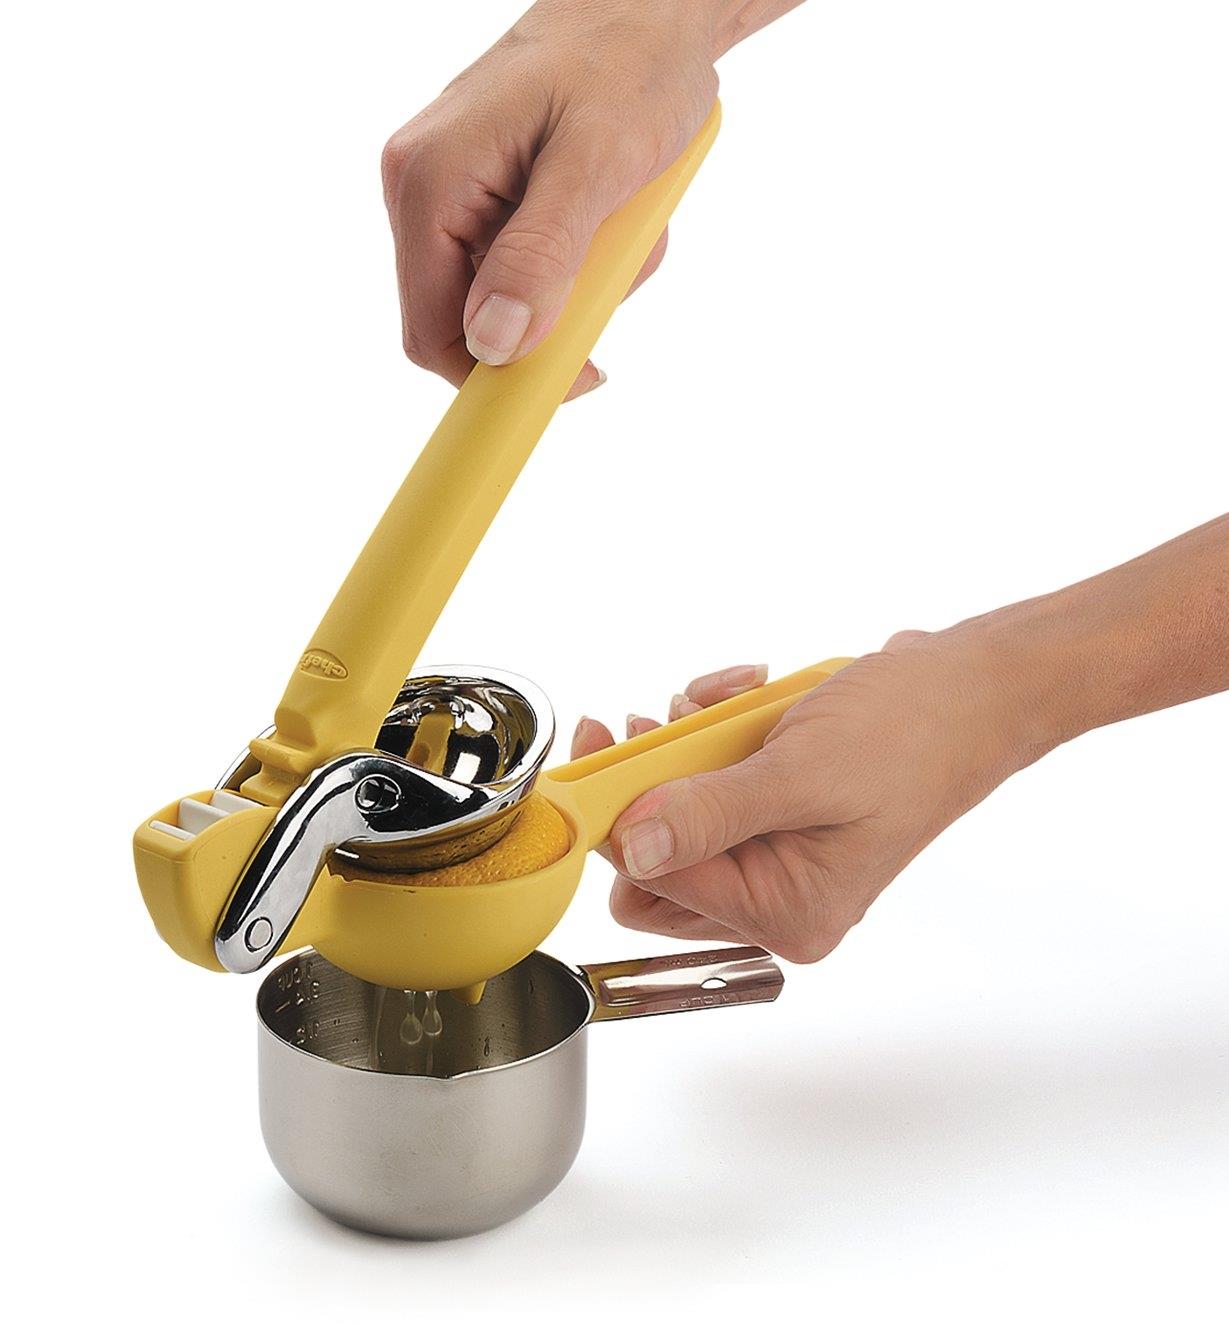 Personne extrayant le jus d'un citron dans une tasse à mesurer avec un presse-citron